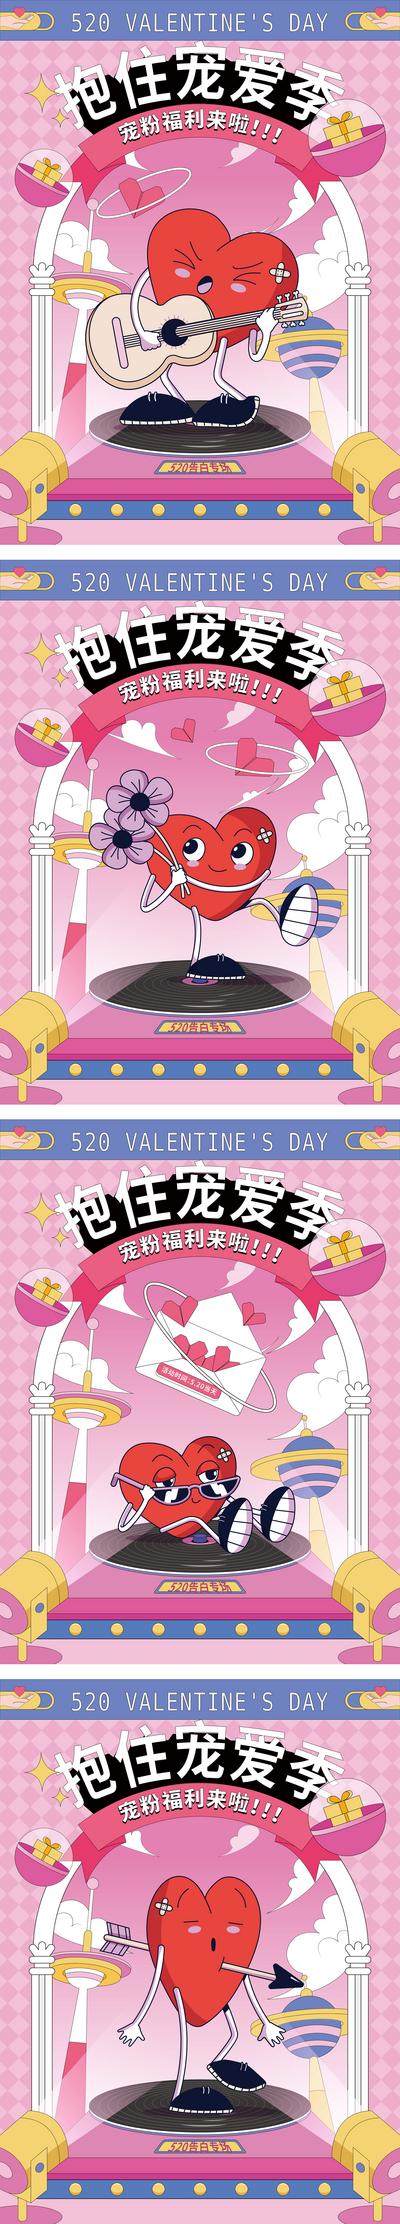 南门网 海报 公历节日 520 情人节 公历节日  love 宠粉 爱心 趣味 插画 粉色 系列